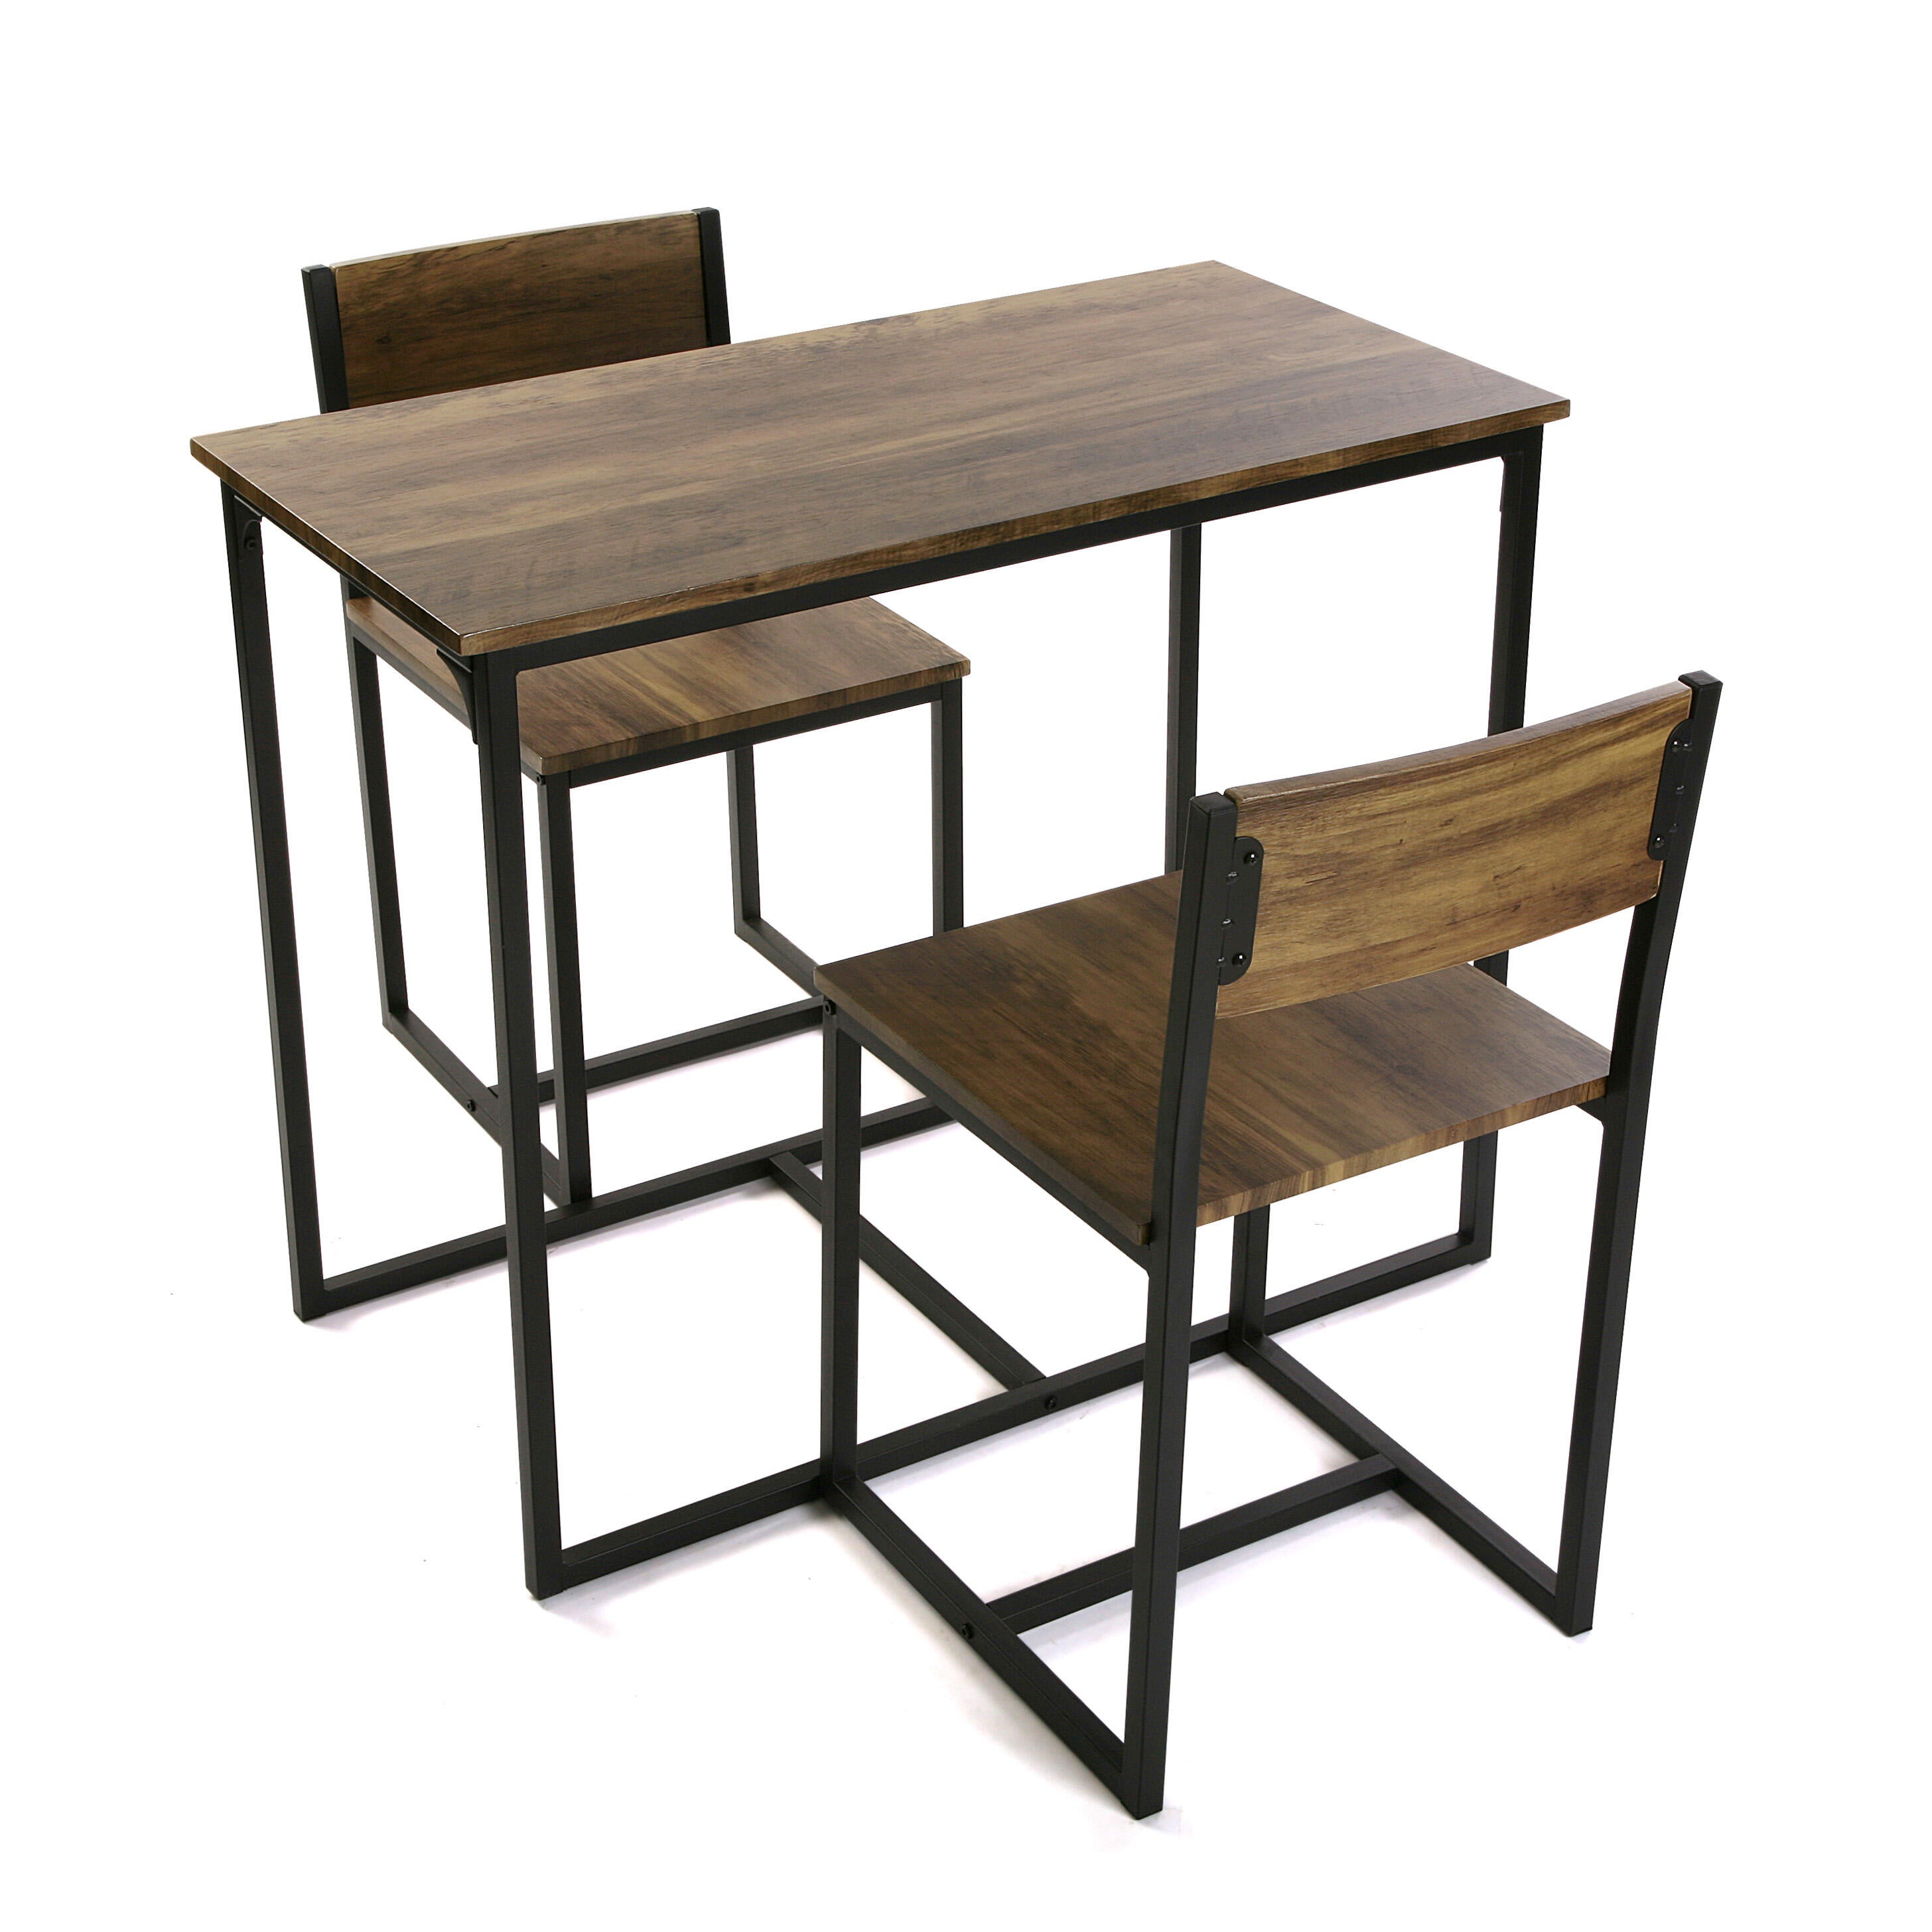 Conjunto de mesa de 75x45x89 cm y 2 sillas versa en madera mdf marrón/negro